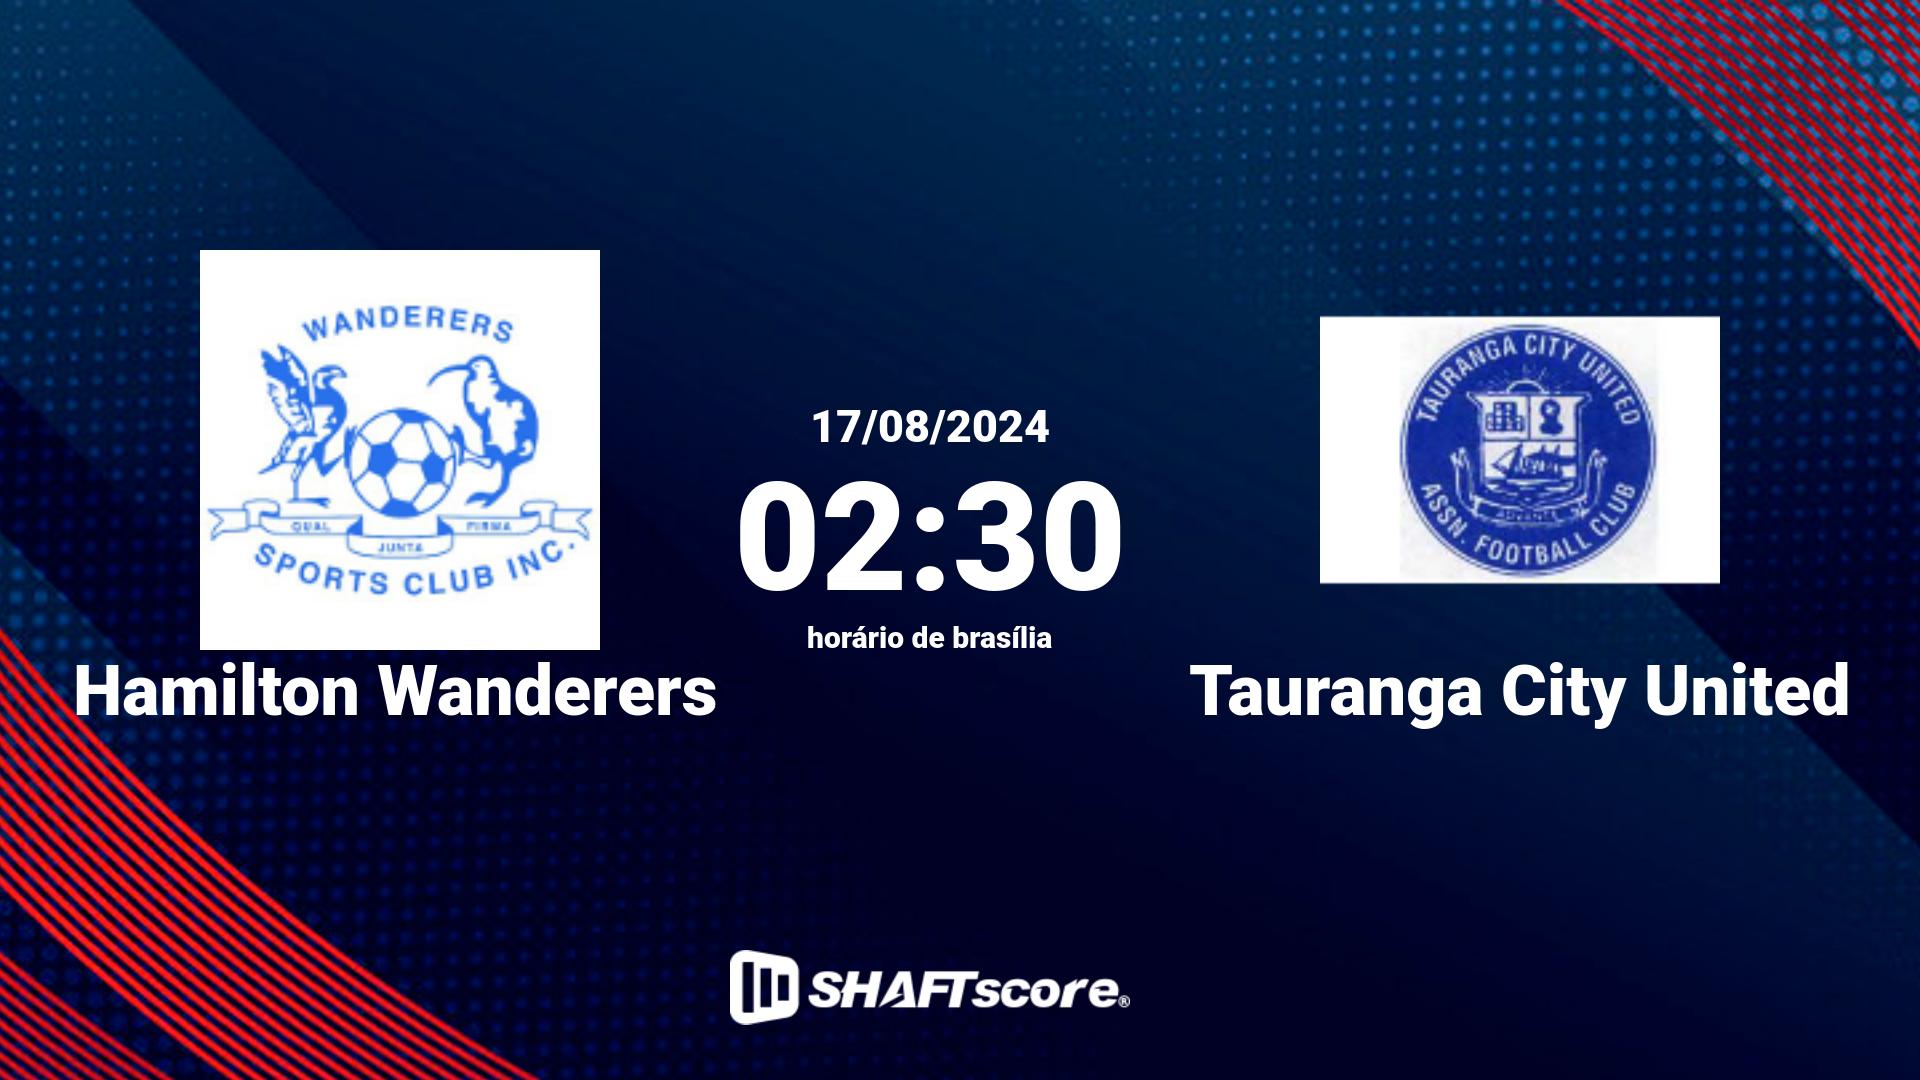 Estatísticas do jogo Hamilton Wanderers vs Tauranga City United 17.08 02:30